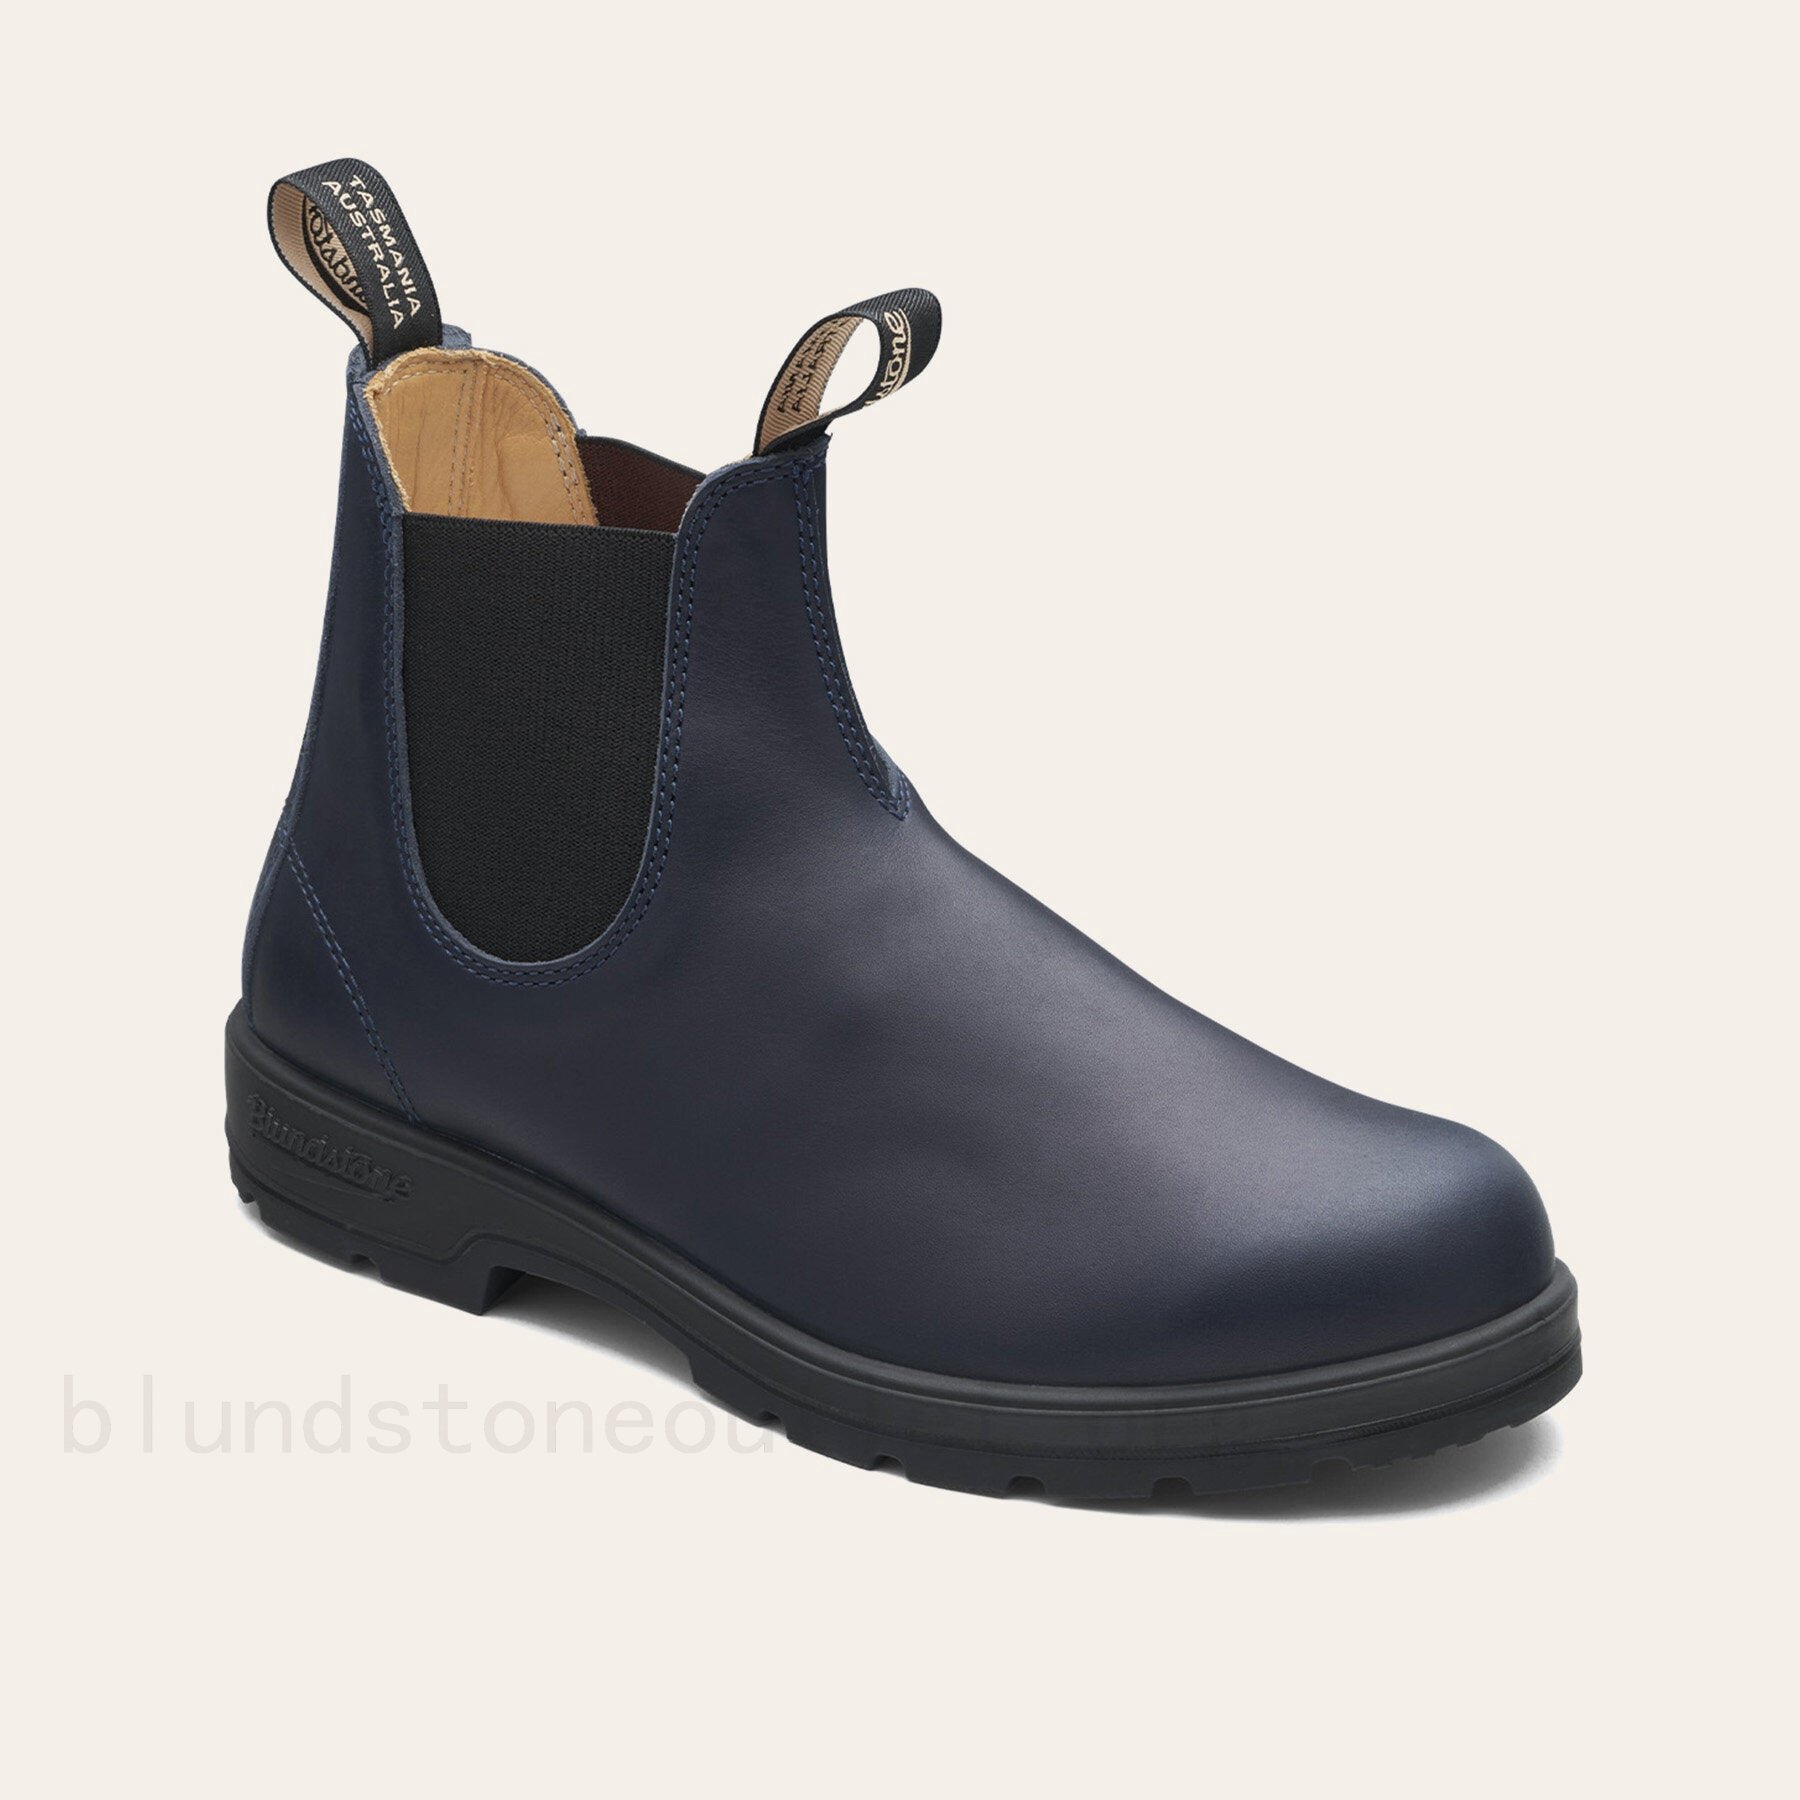 Outlet Shop Online 2246 CLASSICS NAVY & BLACK bluestone scarpe